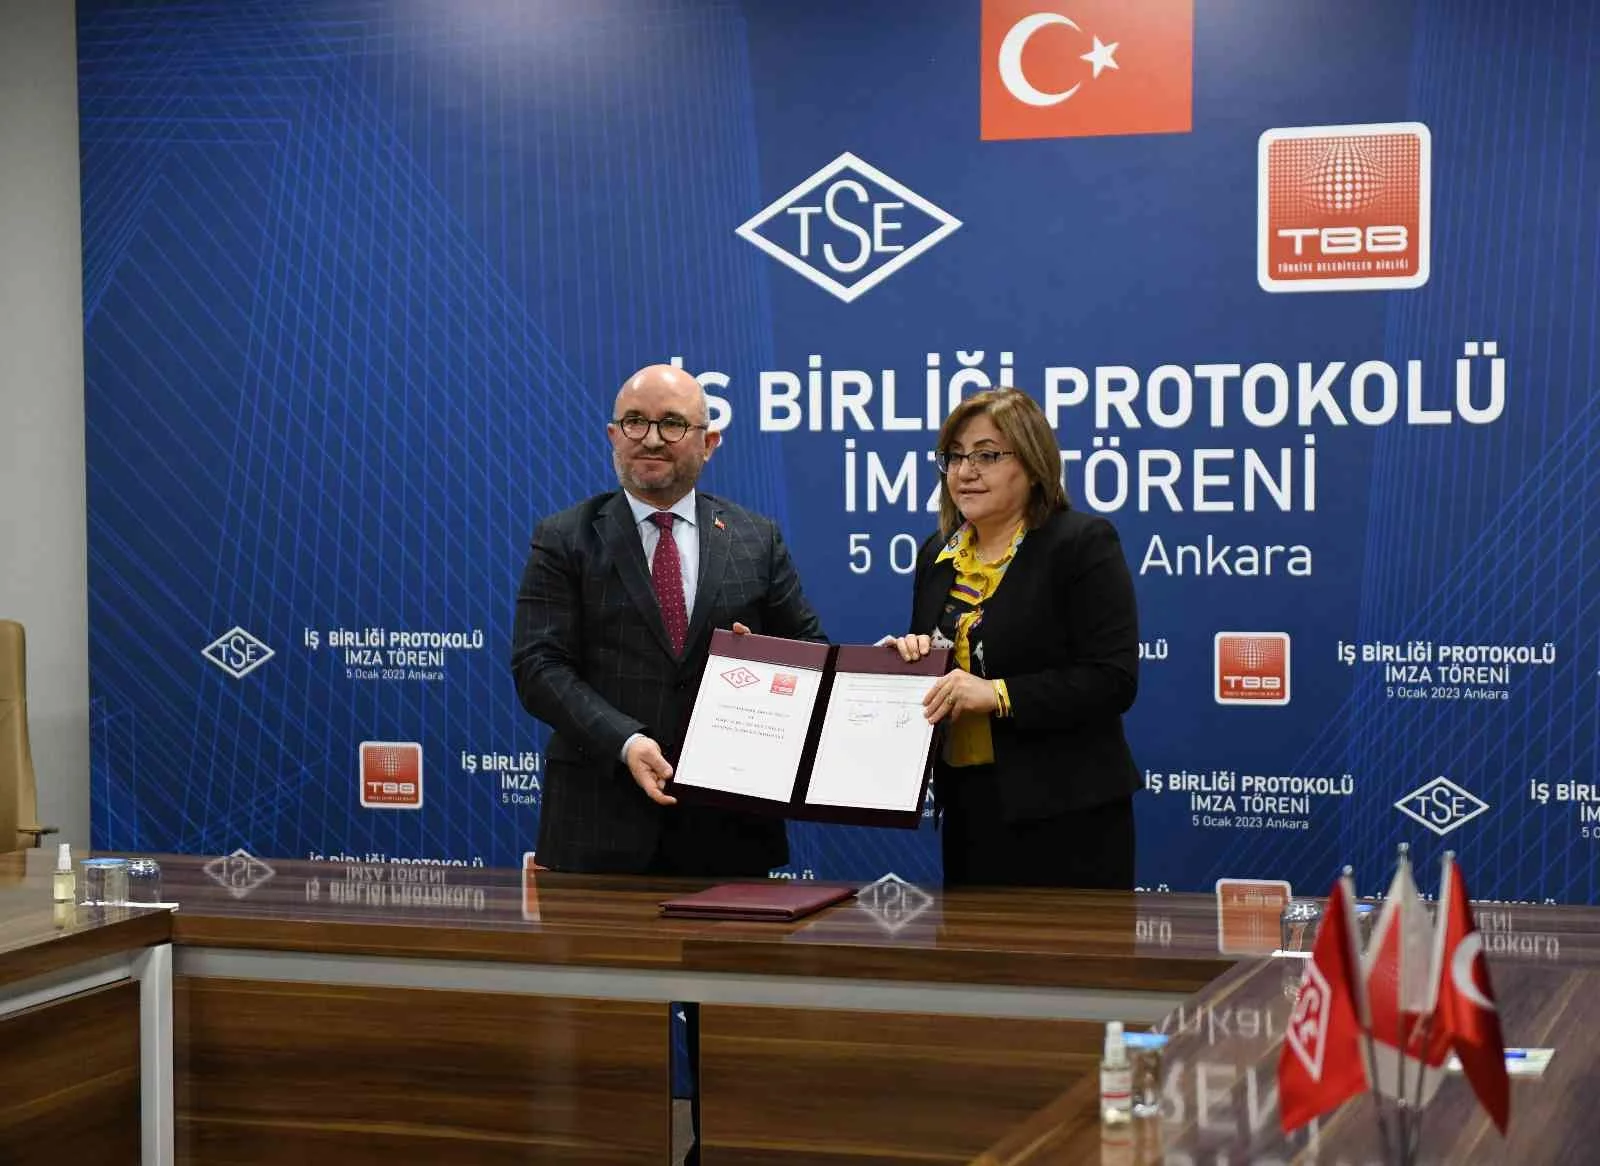 TBB ve TSE standardizasyon alanında iş birliği protokolü imzaladı